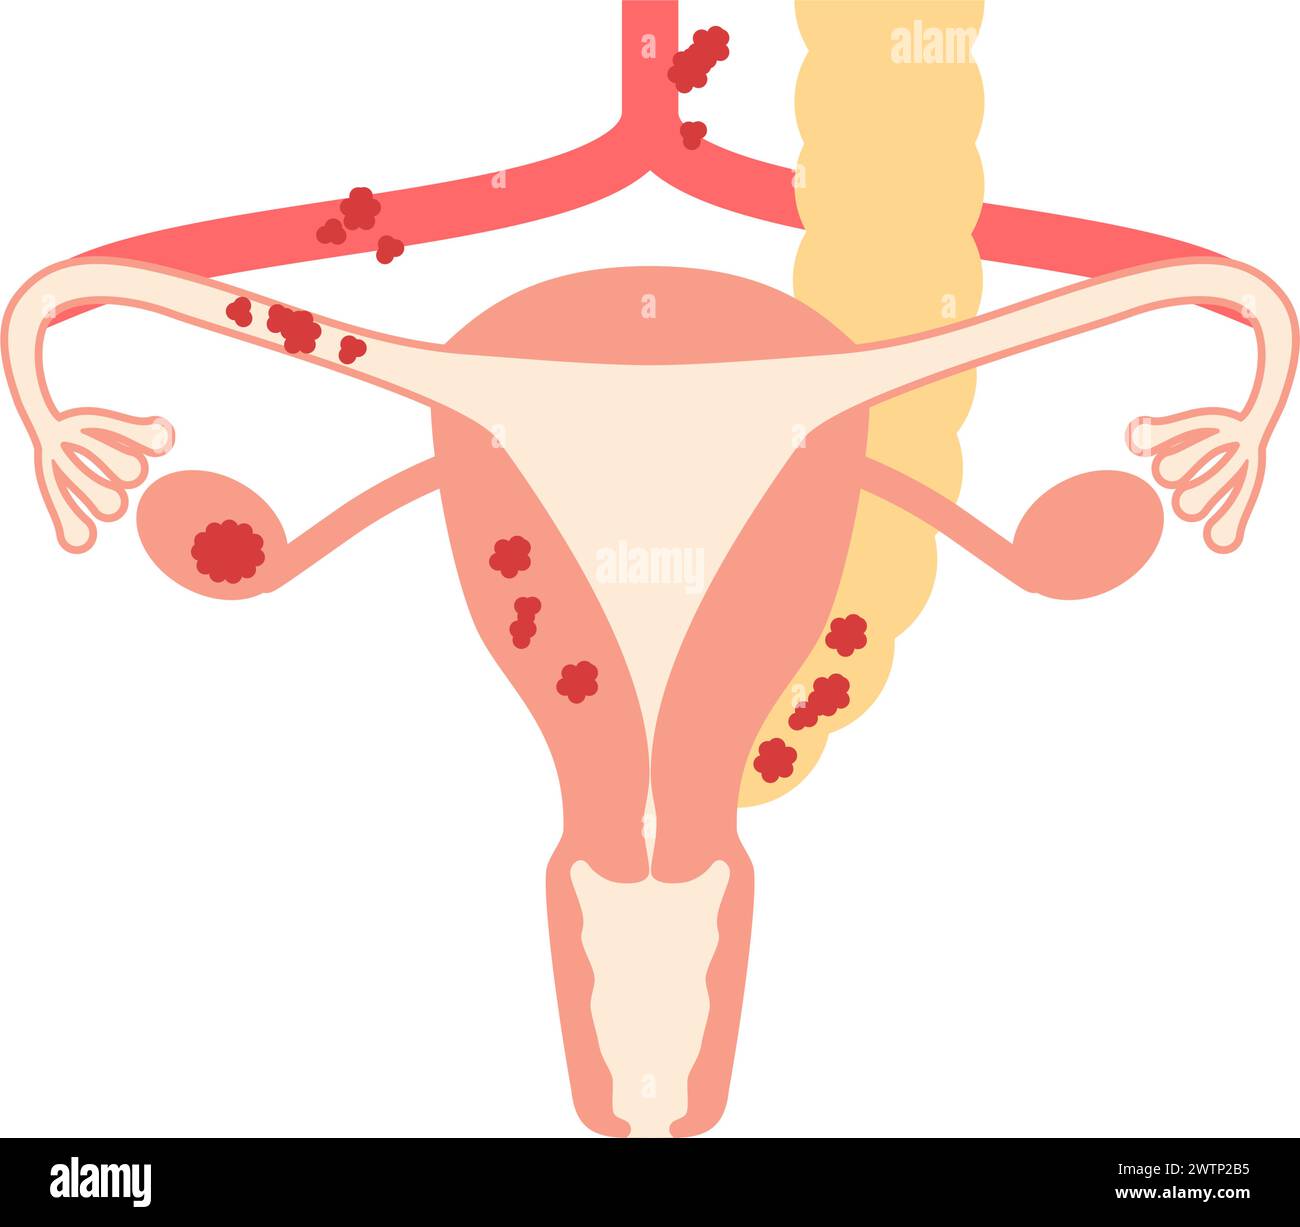 Illustrazione diagrammatica del cancro ovarico stadio III, anatomia dell'utero e delle ovaie, anatomia dell'utero e delle ovaie - traduzione: Il cancro ha Illustrazione Vettoriale